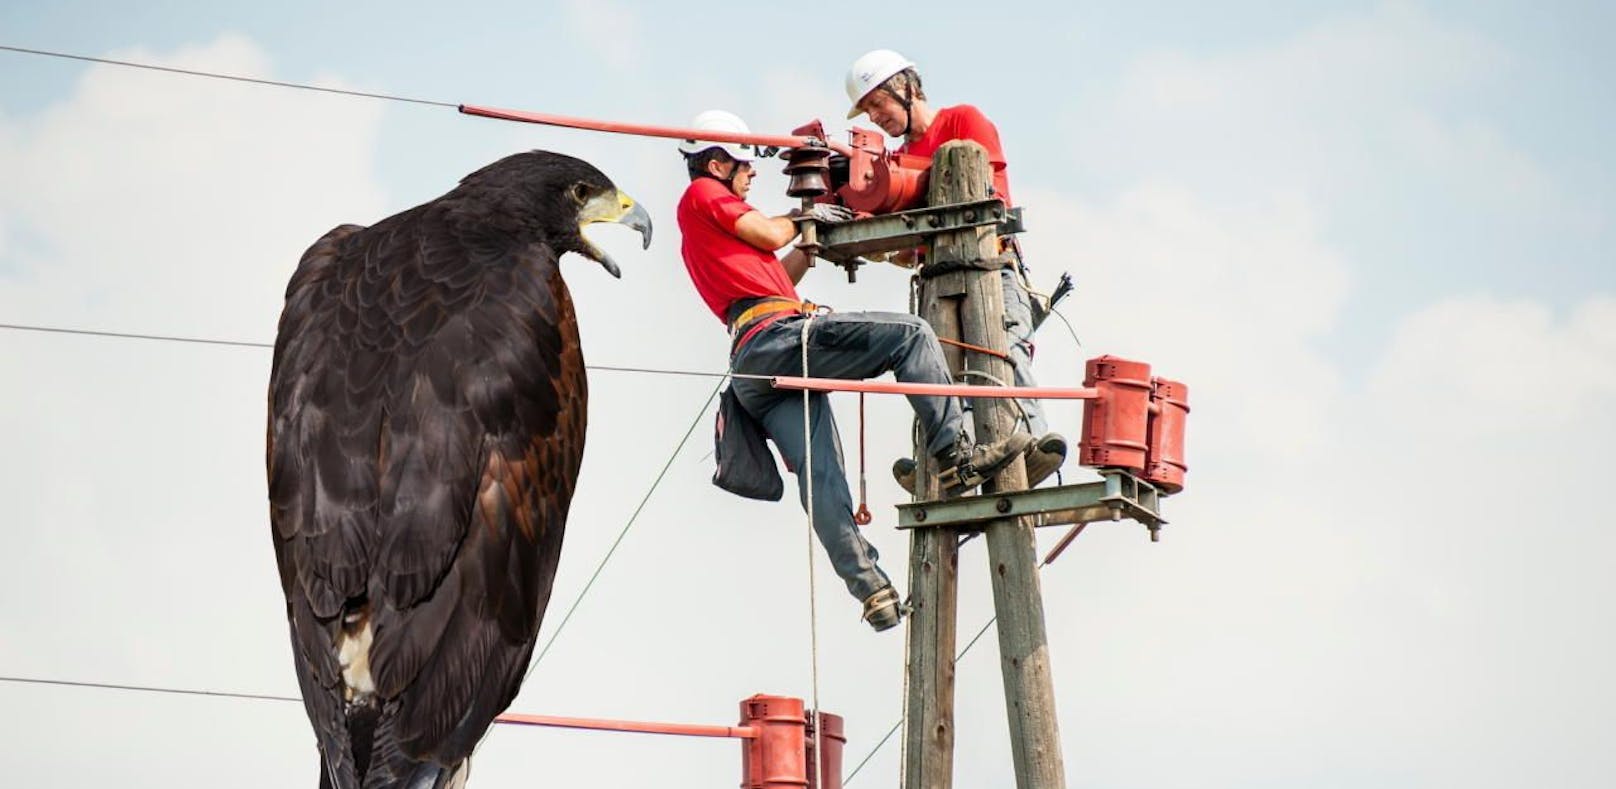 Künftig sollen in NÖ keine Adler mehr von Strommasten gegrillt werden.